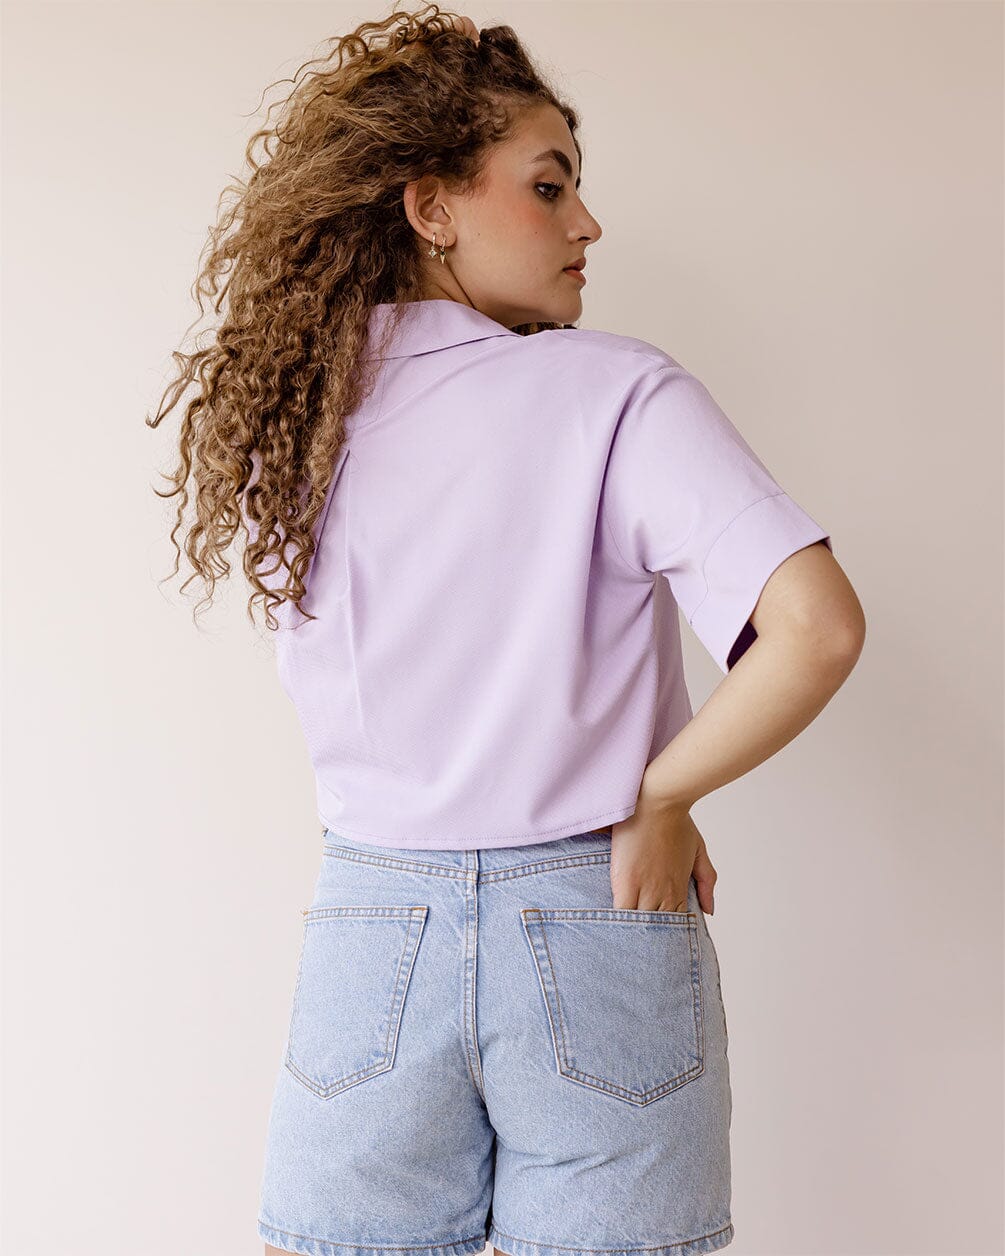 Lilac Cropped Shirt Women Shirts IN YOUR SHOE 